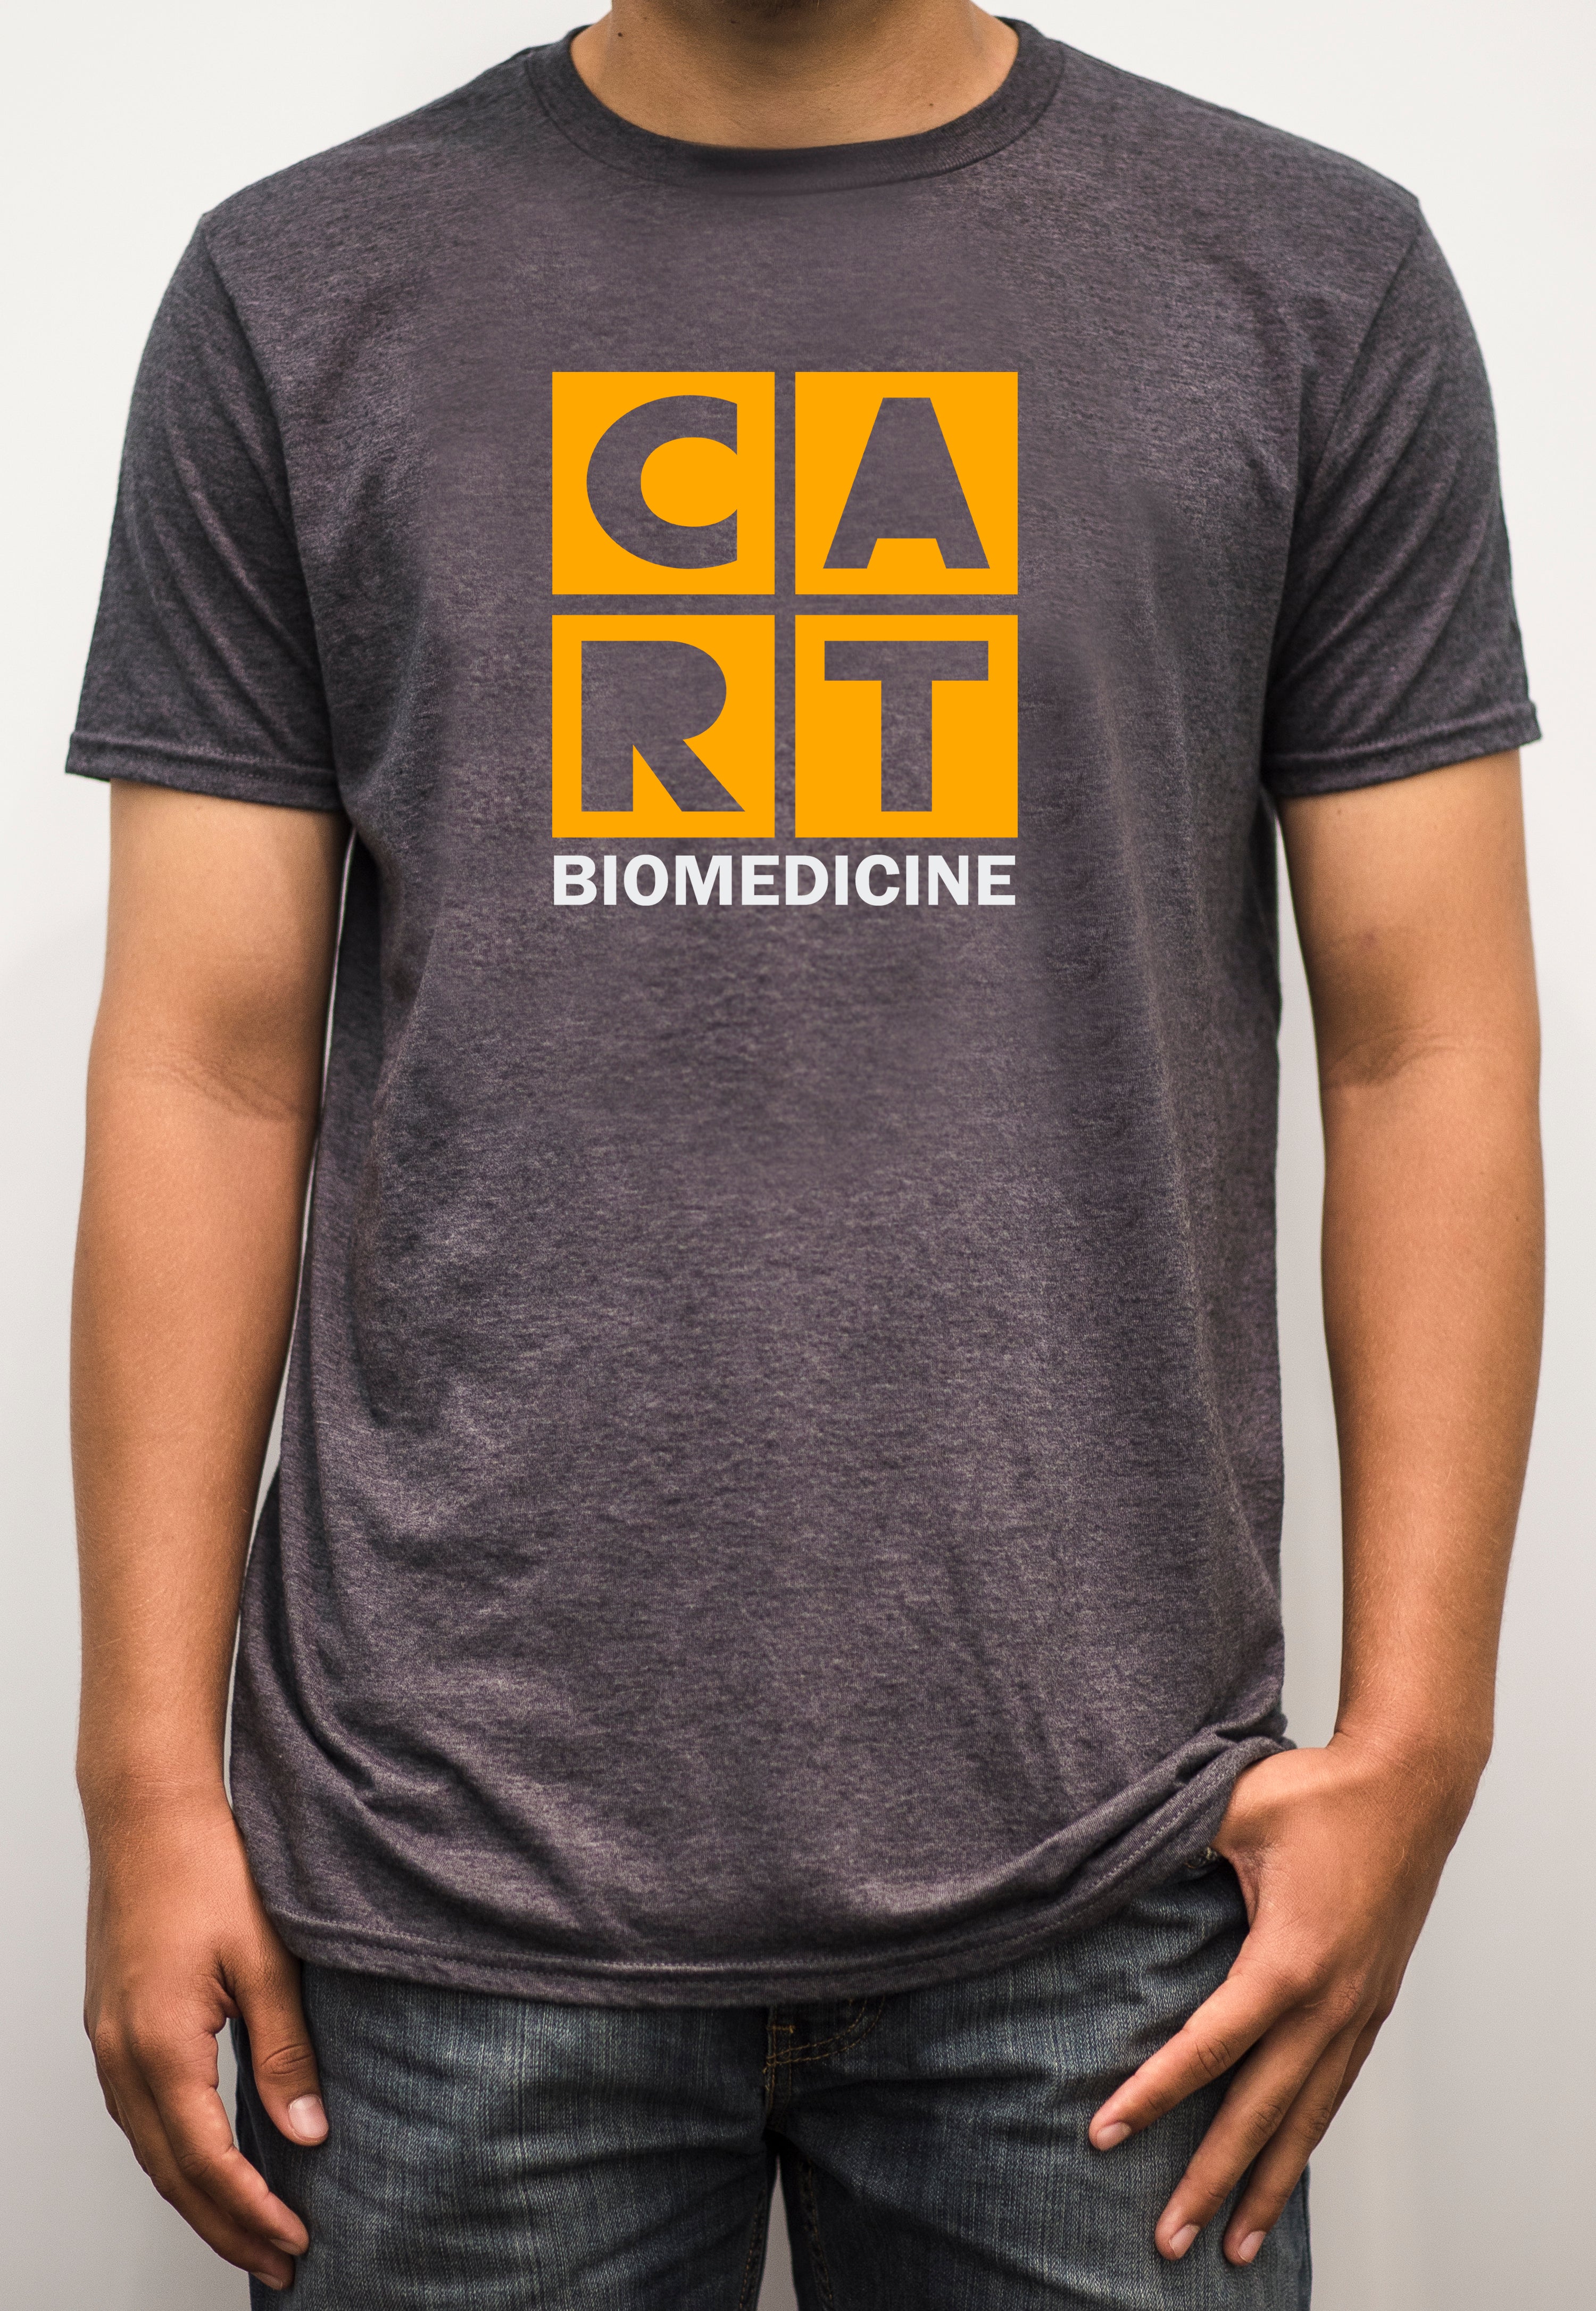 Short sleeve t-shirt - biomedicine white/yellow